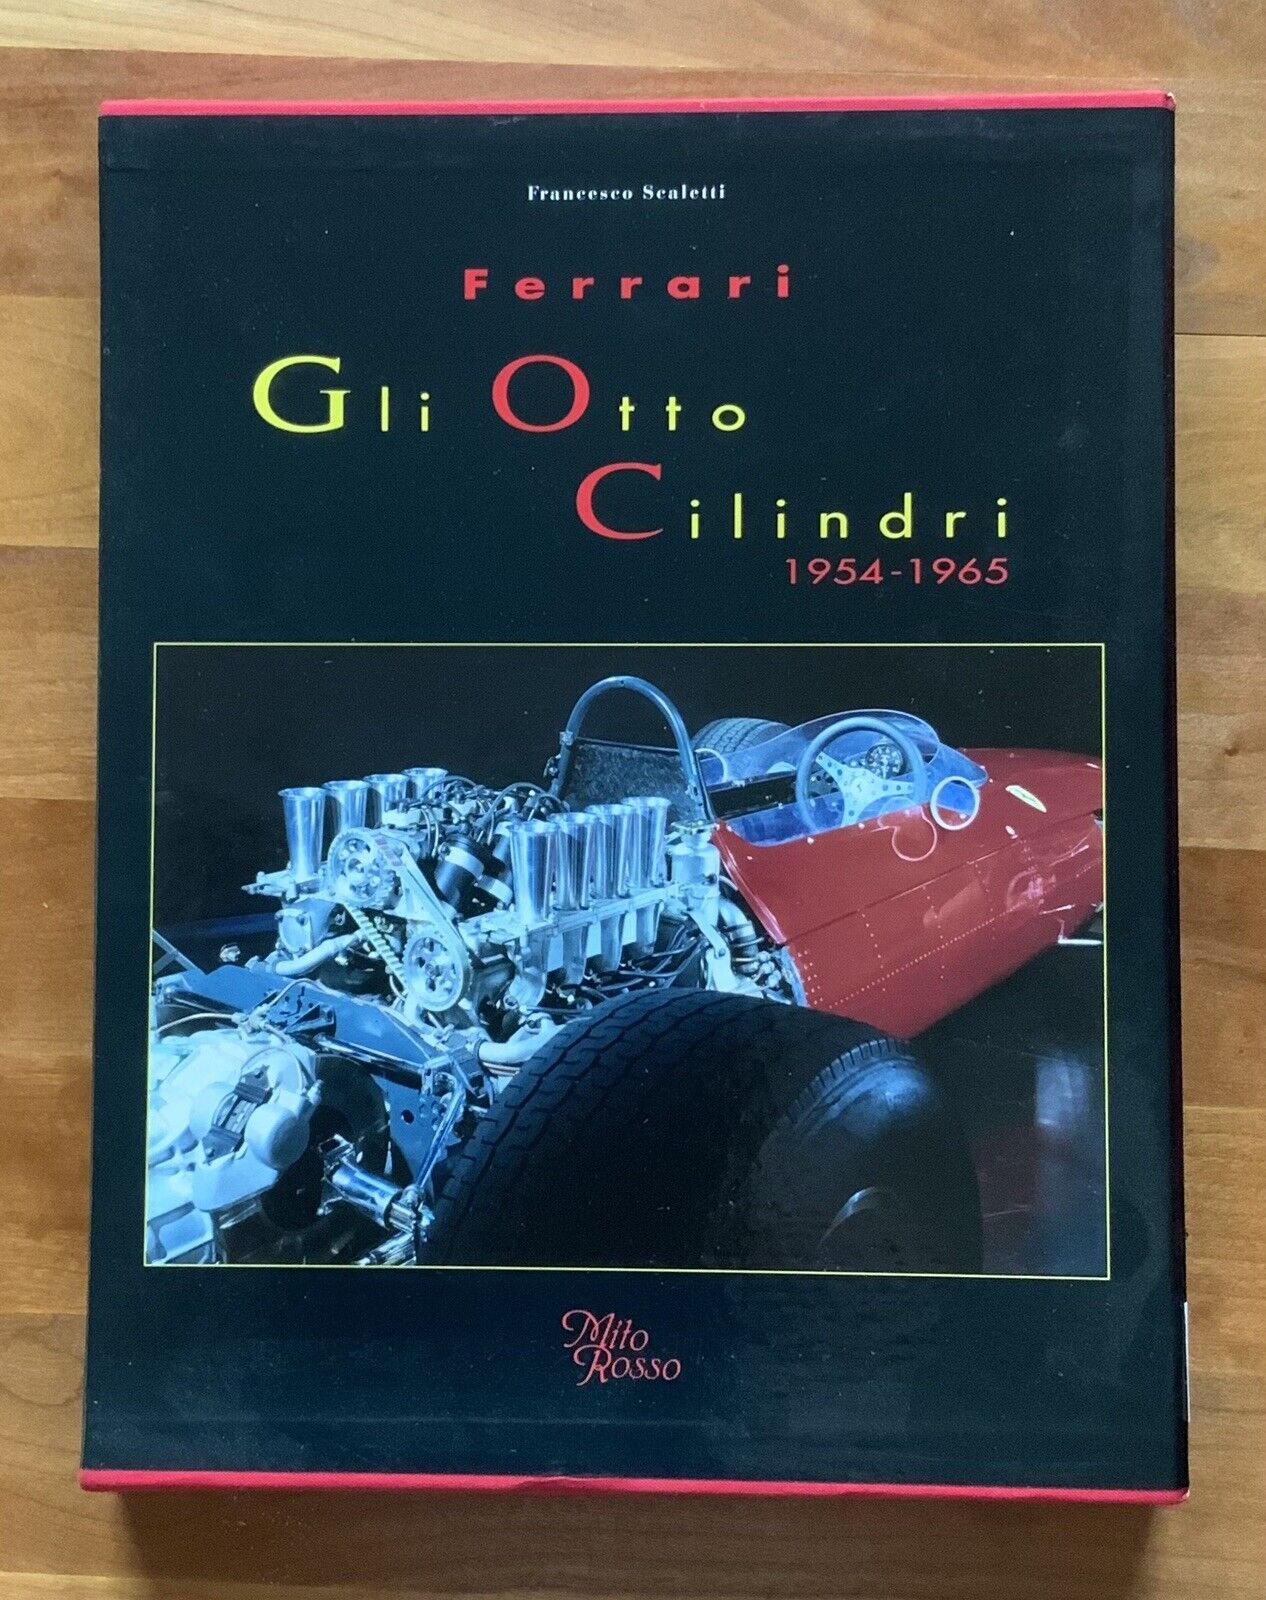 FERRARI GLI OTTO CILINDRI 1954-1965, Ferrari Book, Numbered Slipcase (1166)